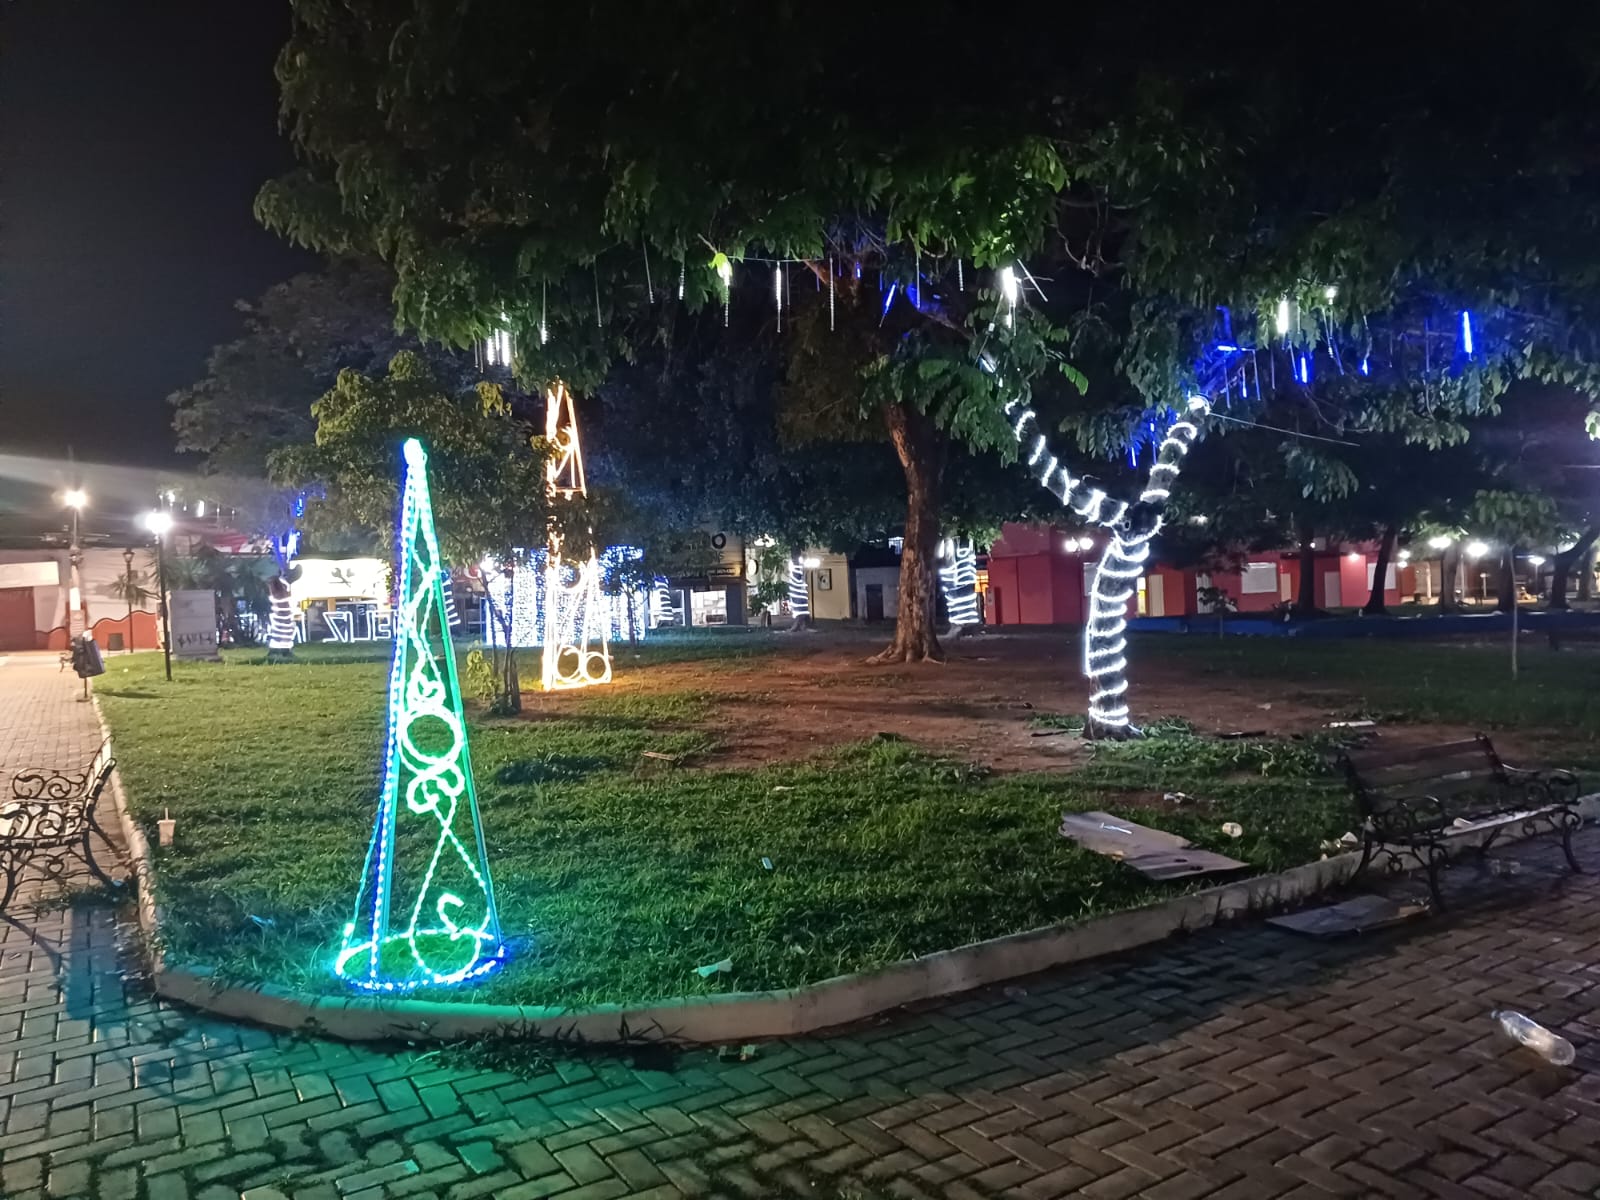 Rondonópolis | Depois das comemorações dos 70 anos, cidade lança luzes de Natal